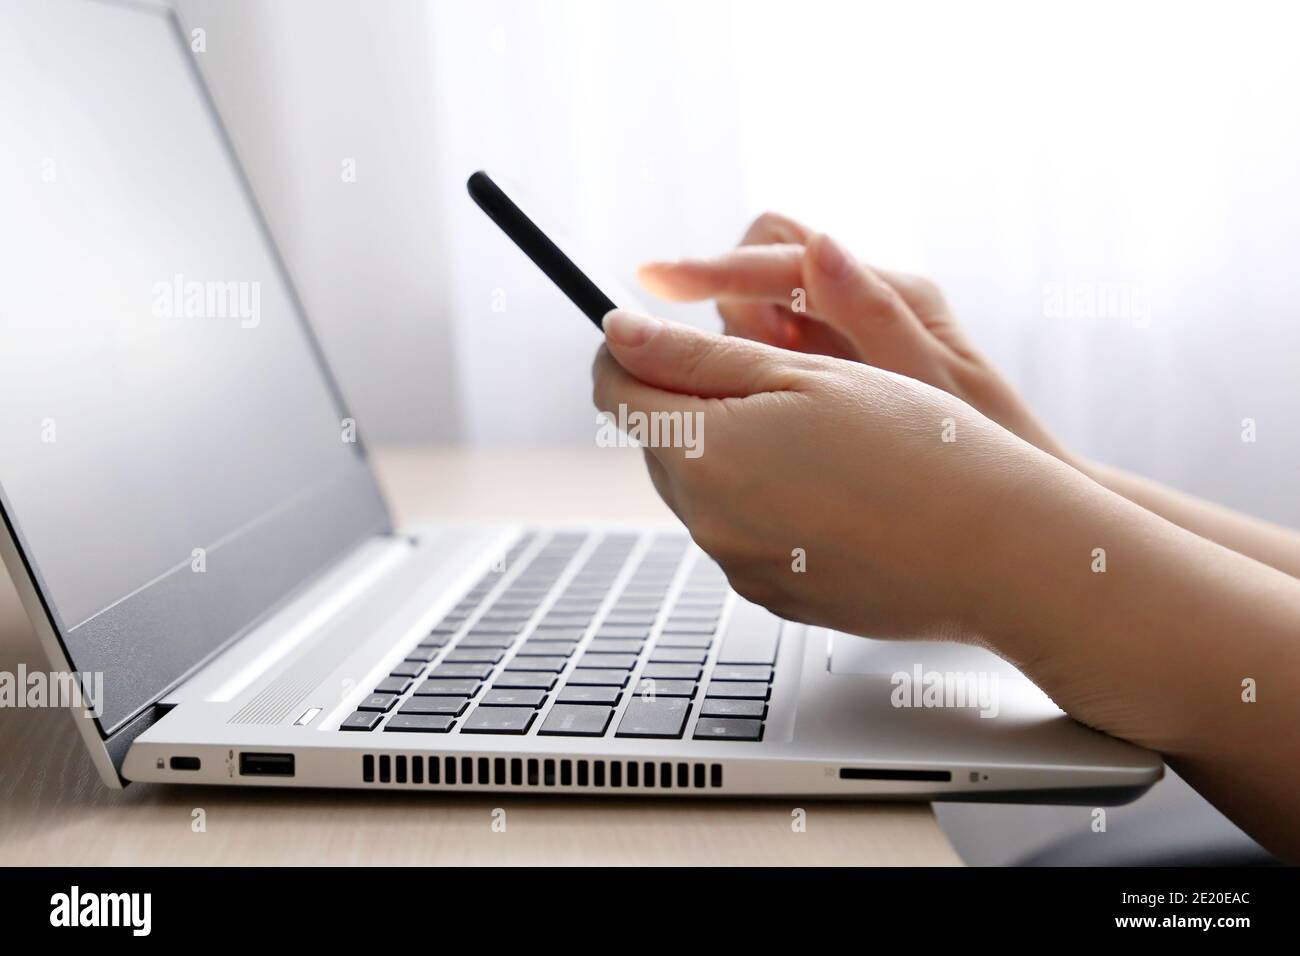 Femme utilisant un smartphone sur l'arrière-plan du clavier de l'ordinateur portable. Concept de communication, de travail et de paiement en ligne Banque D'Images